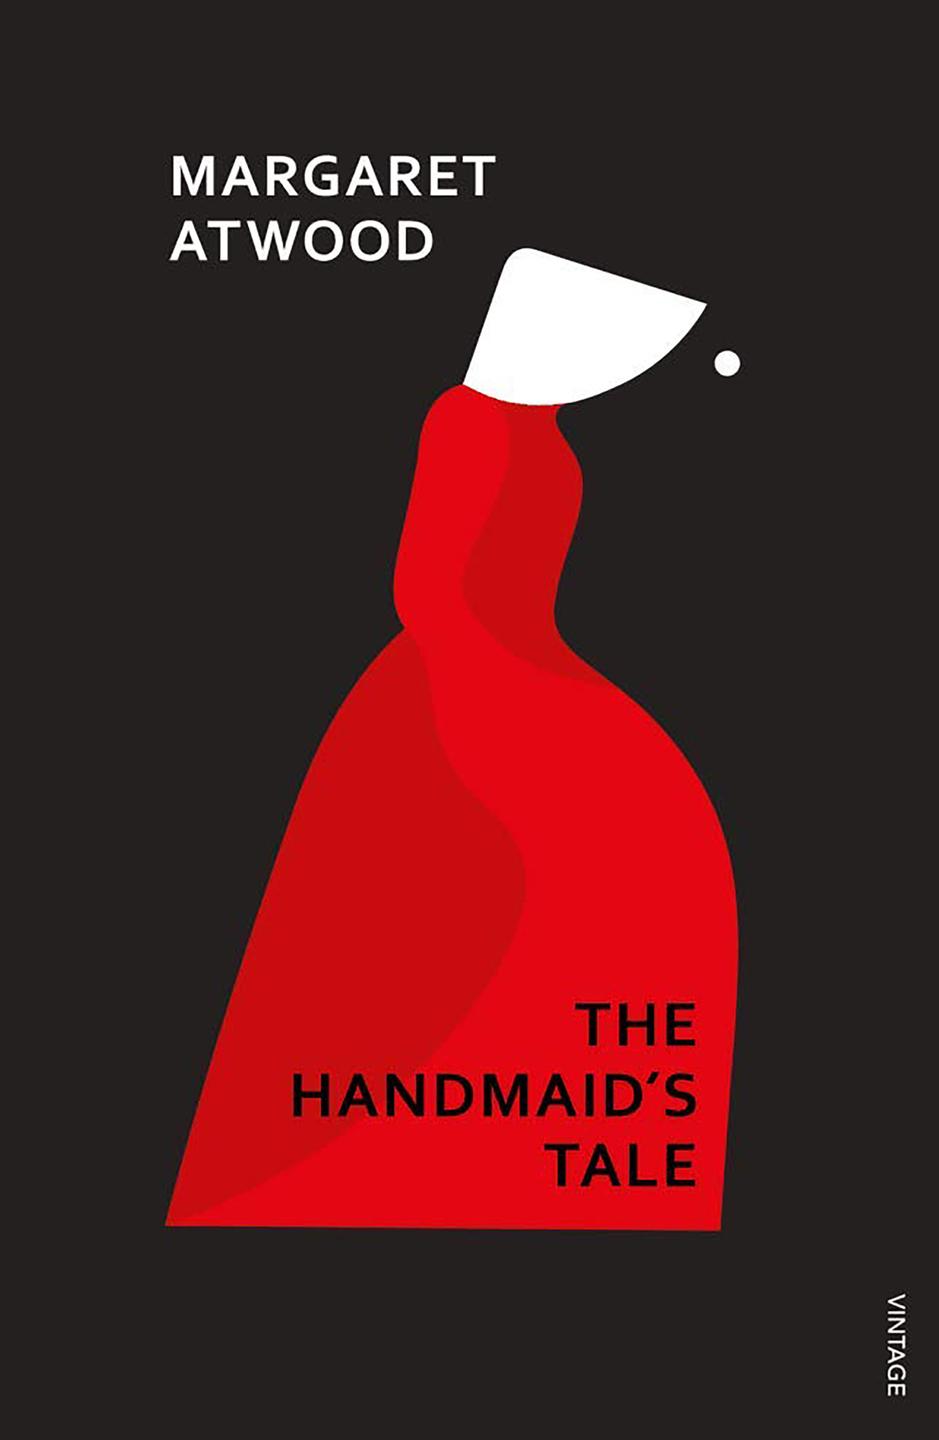 Buchcover von "The Handmaid's Tale" von Margaret Atwood.